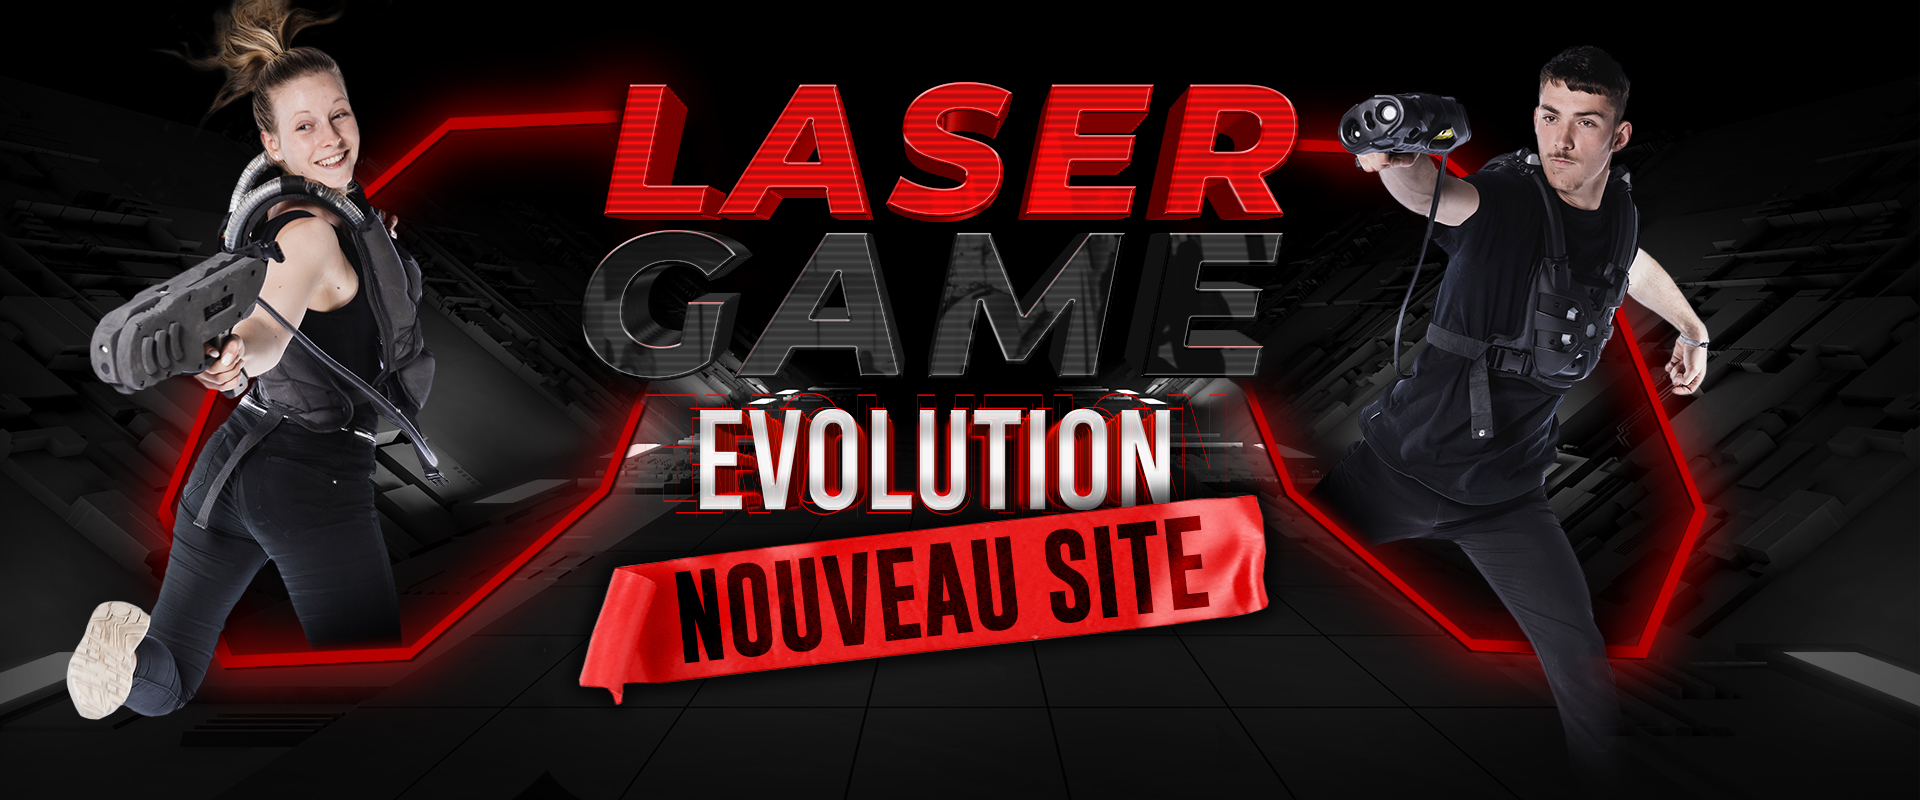 Laser Game Evolution IDF : tarifs, horaires, adresse - Pitchoun Sorties